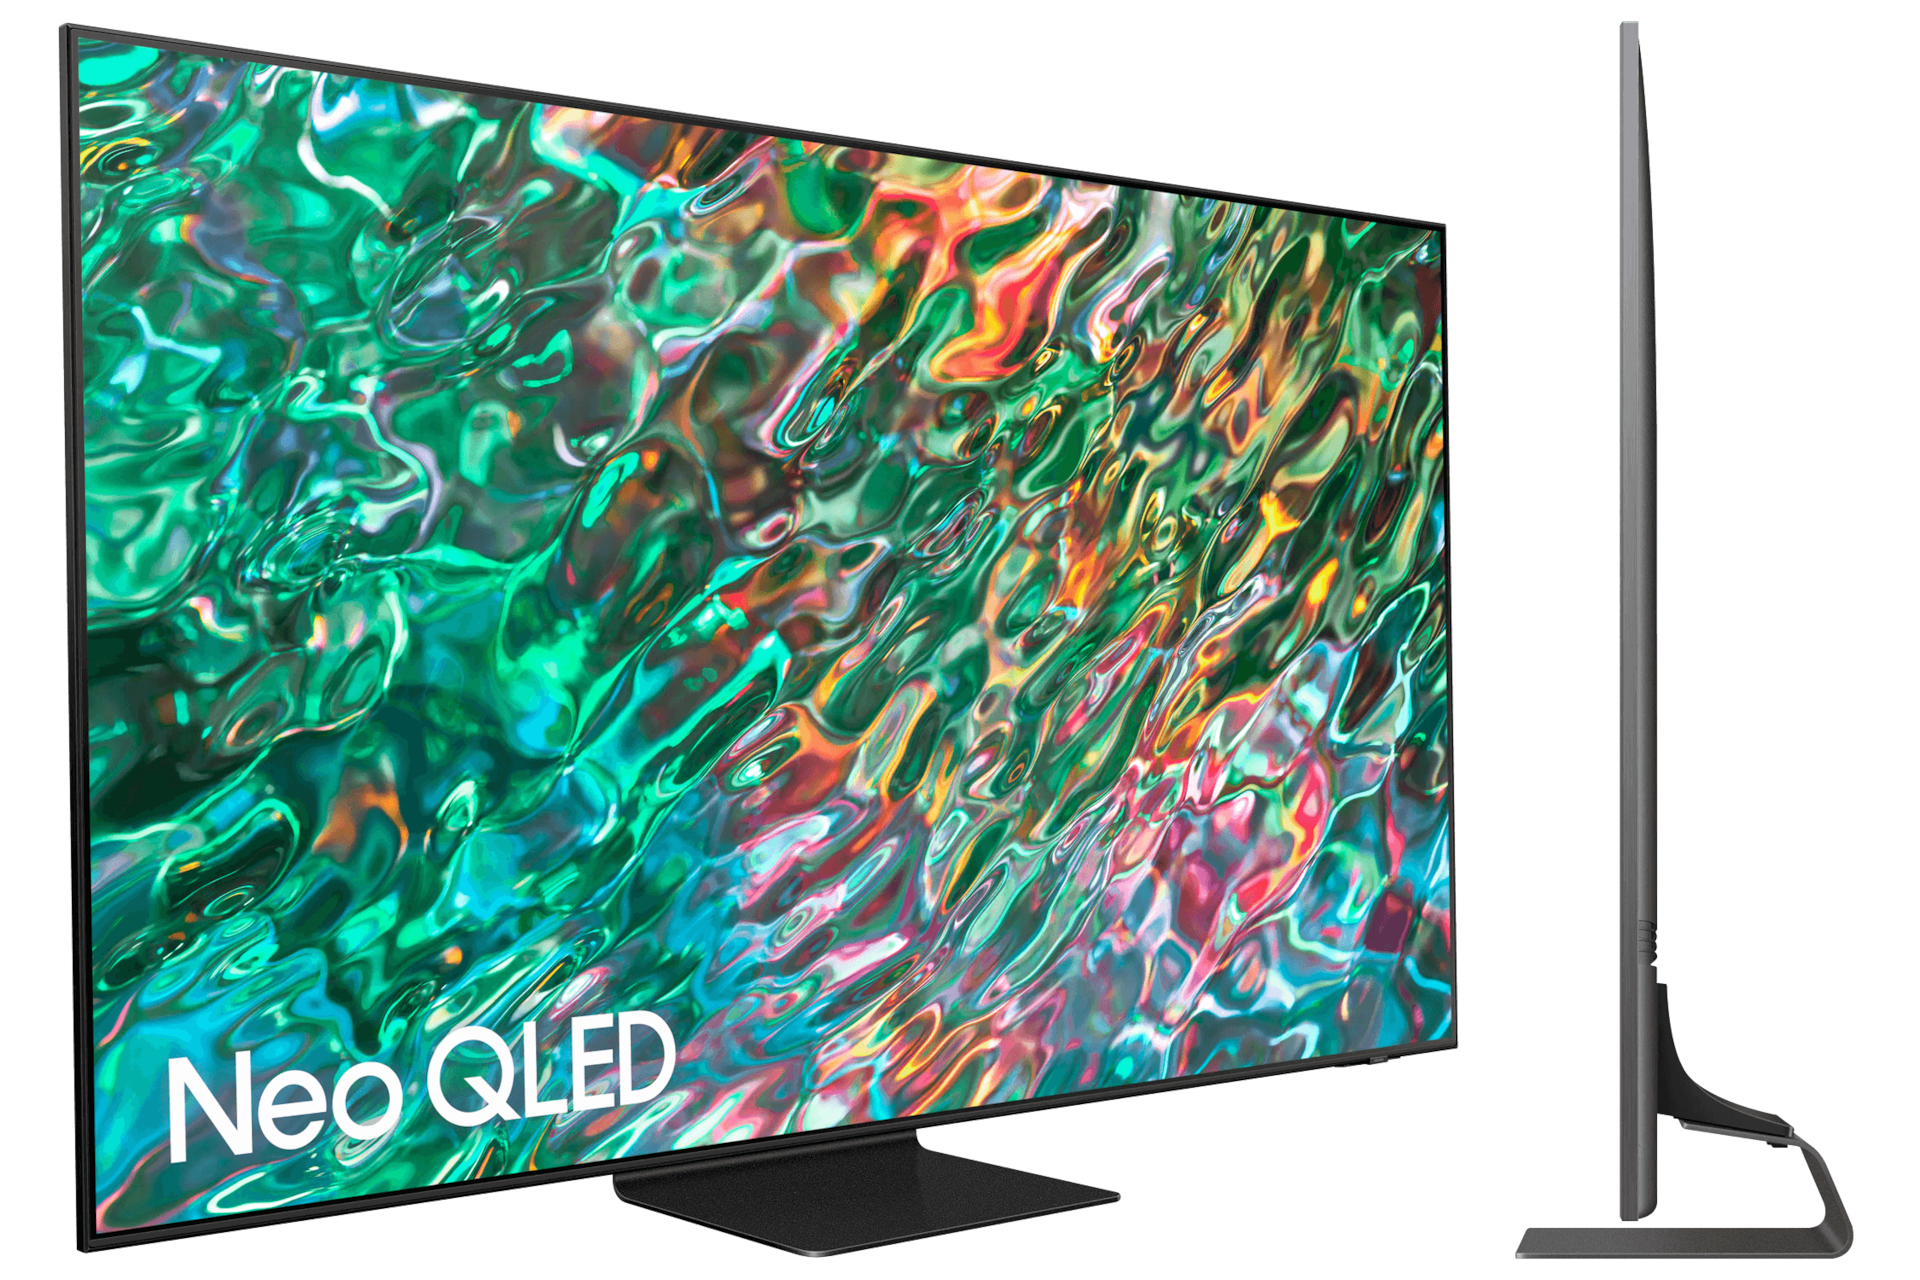 Con pantalla 4K HDR de 50 y Android TV, no encontrarás una mejor oferta  que este televisor por 199 euros